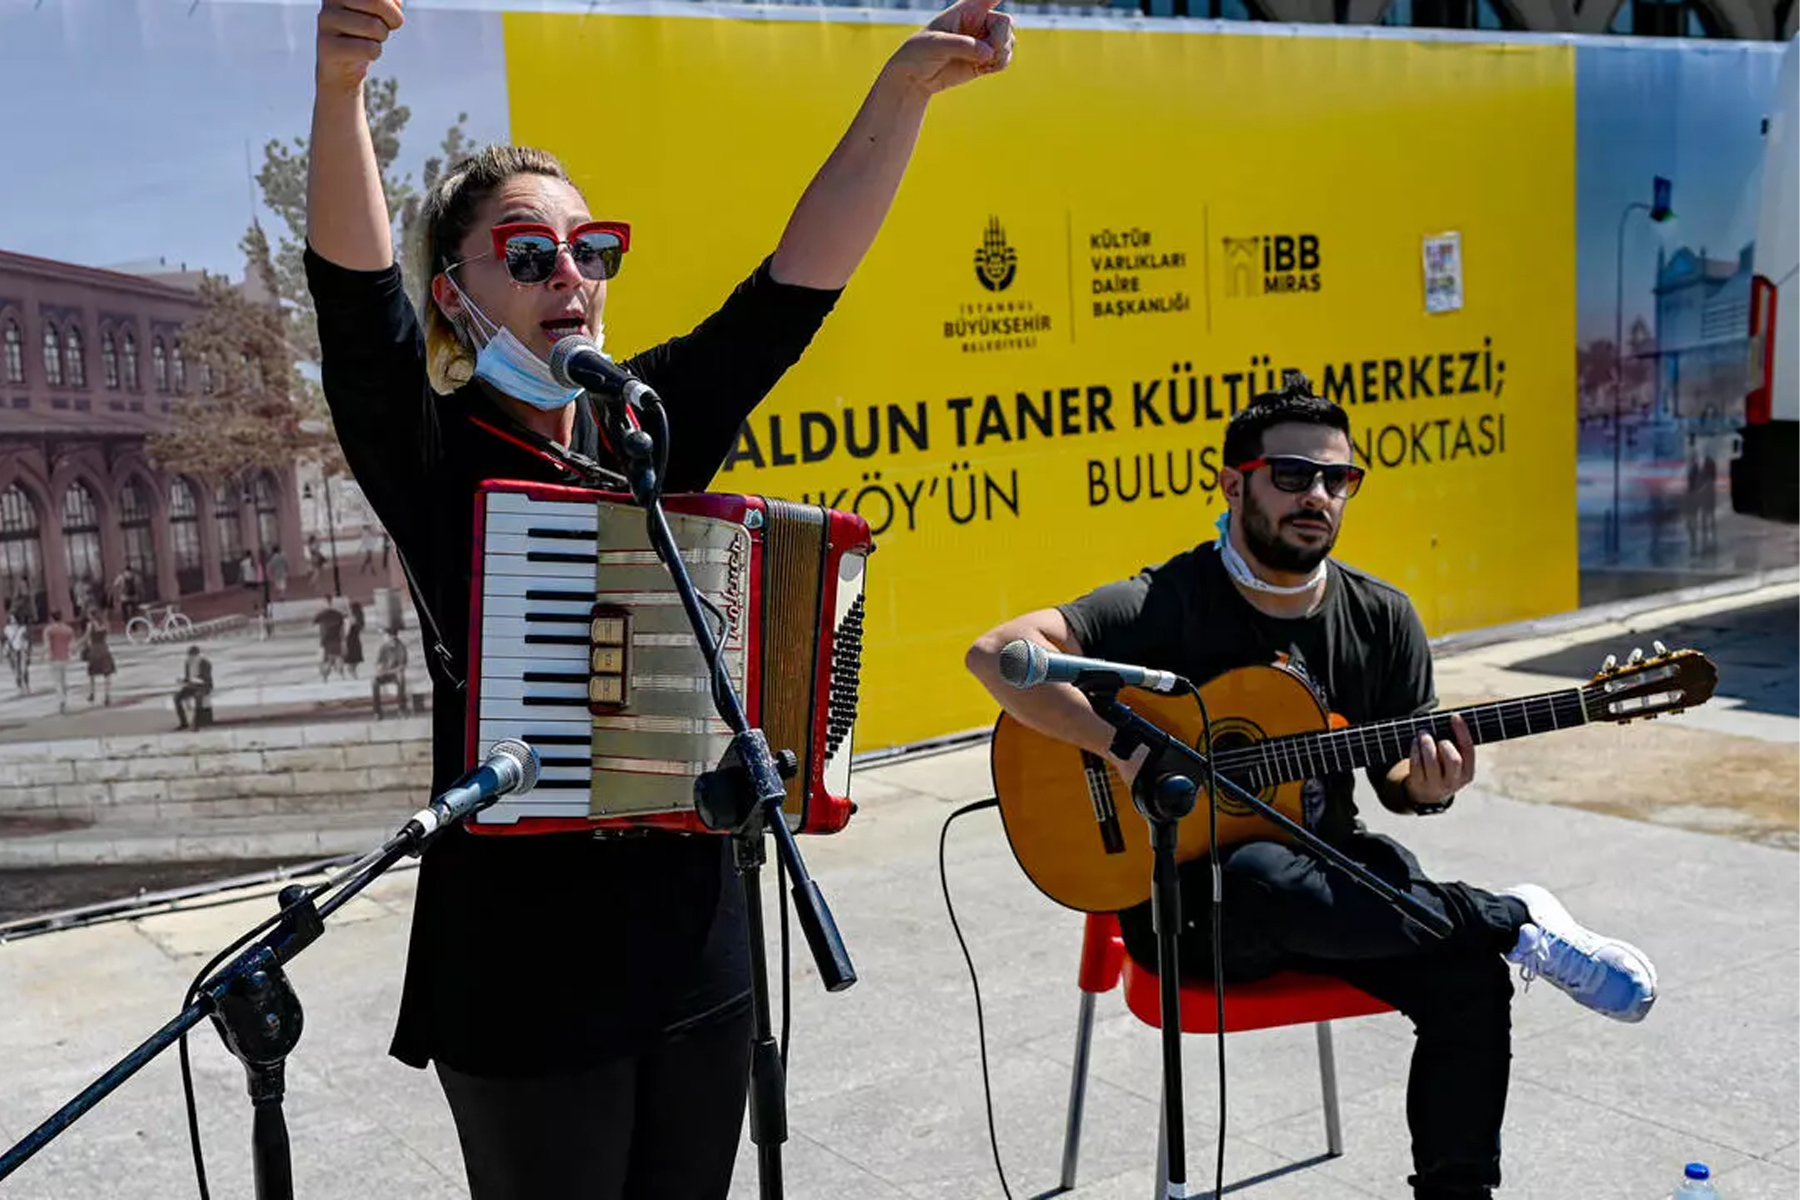 المغنون والموسيقيون في تركيا غاضبون لاستمرار حظر حفلاتهم رغم فتح الحانات